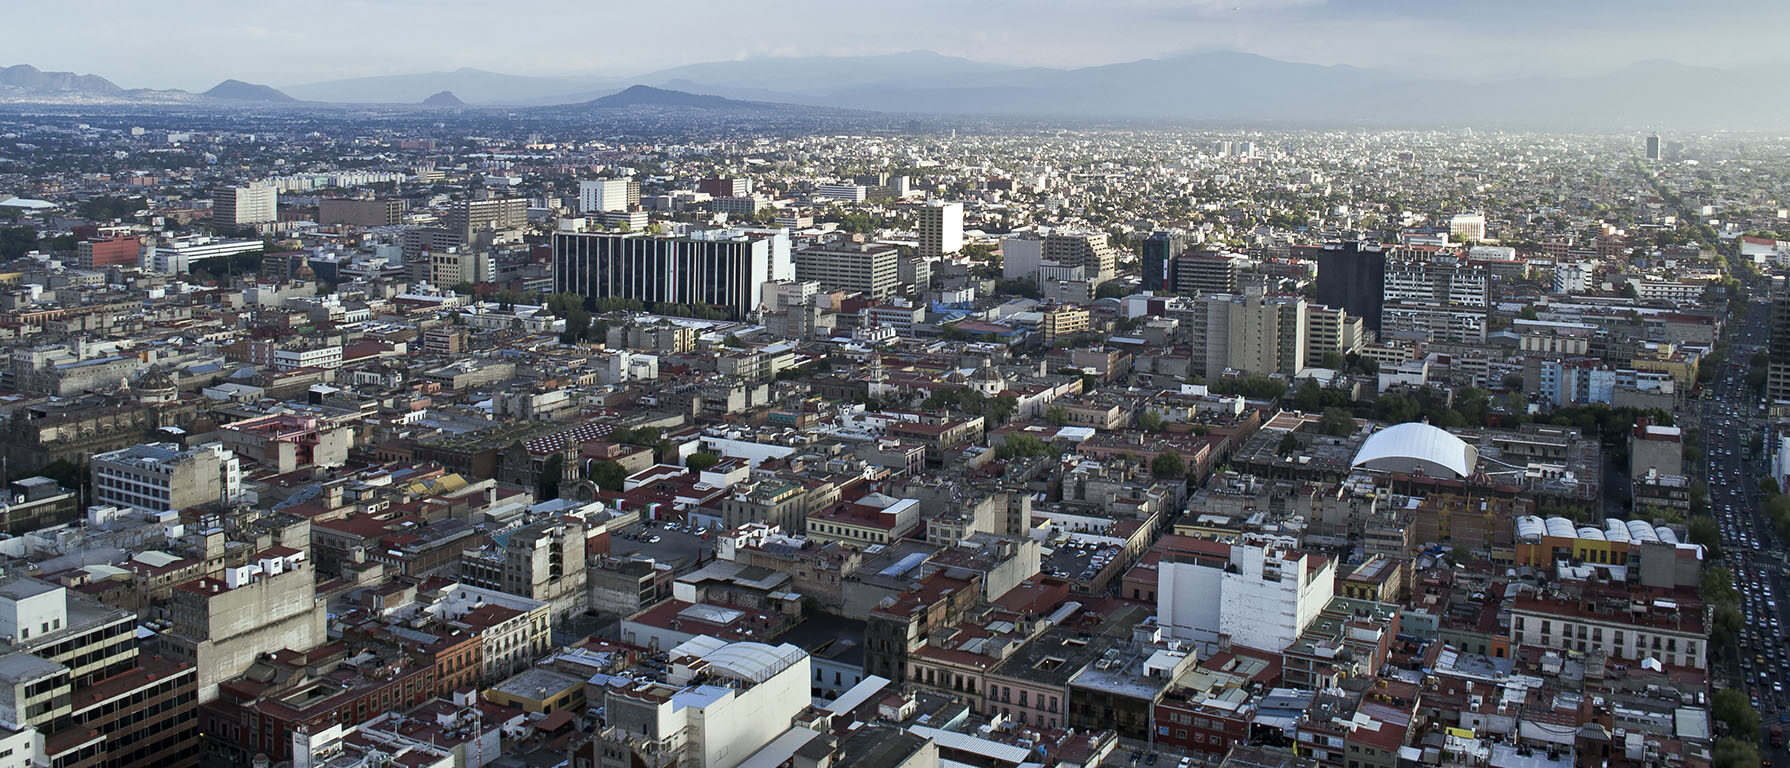 L'assemblée du CELAM se déroulera à Mexico  | © Flickr/
K. Christensen/CC BY-SA 2.0